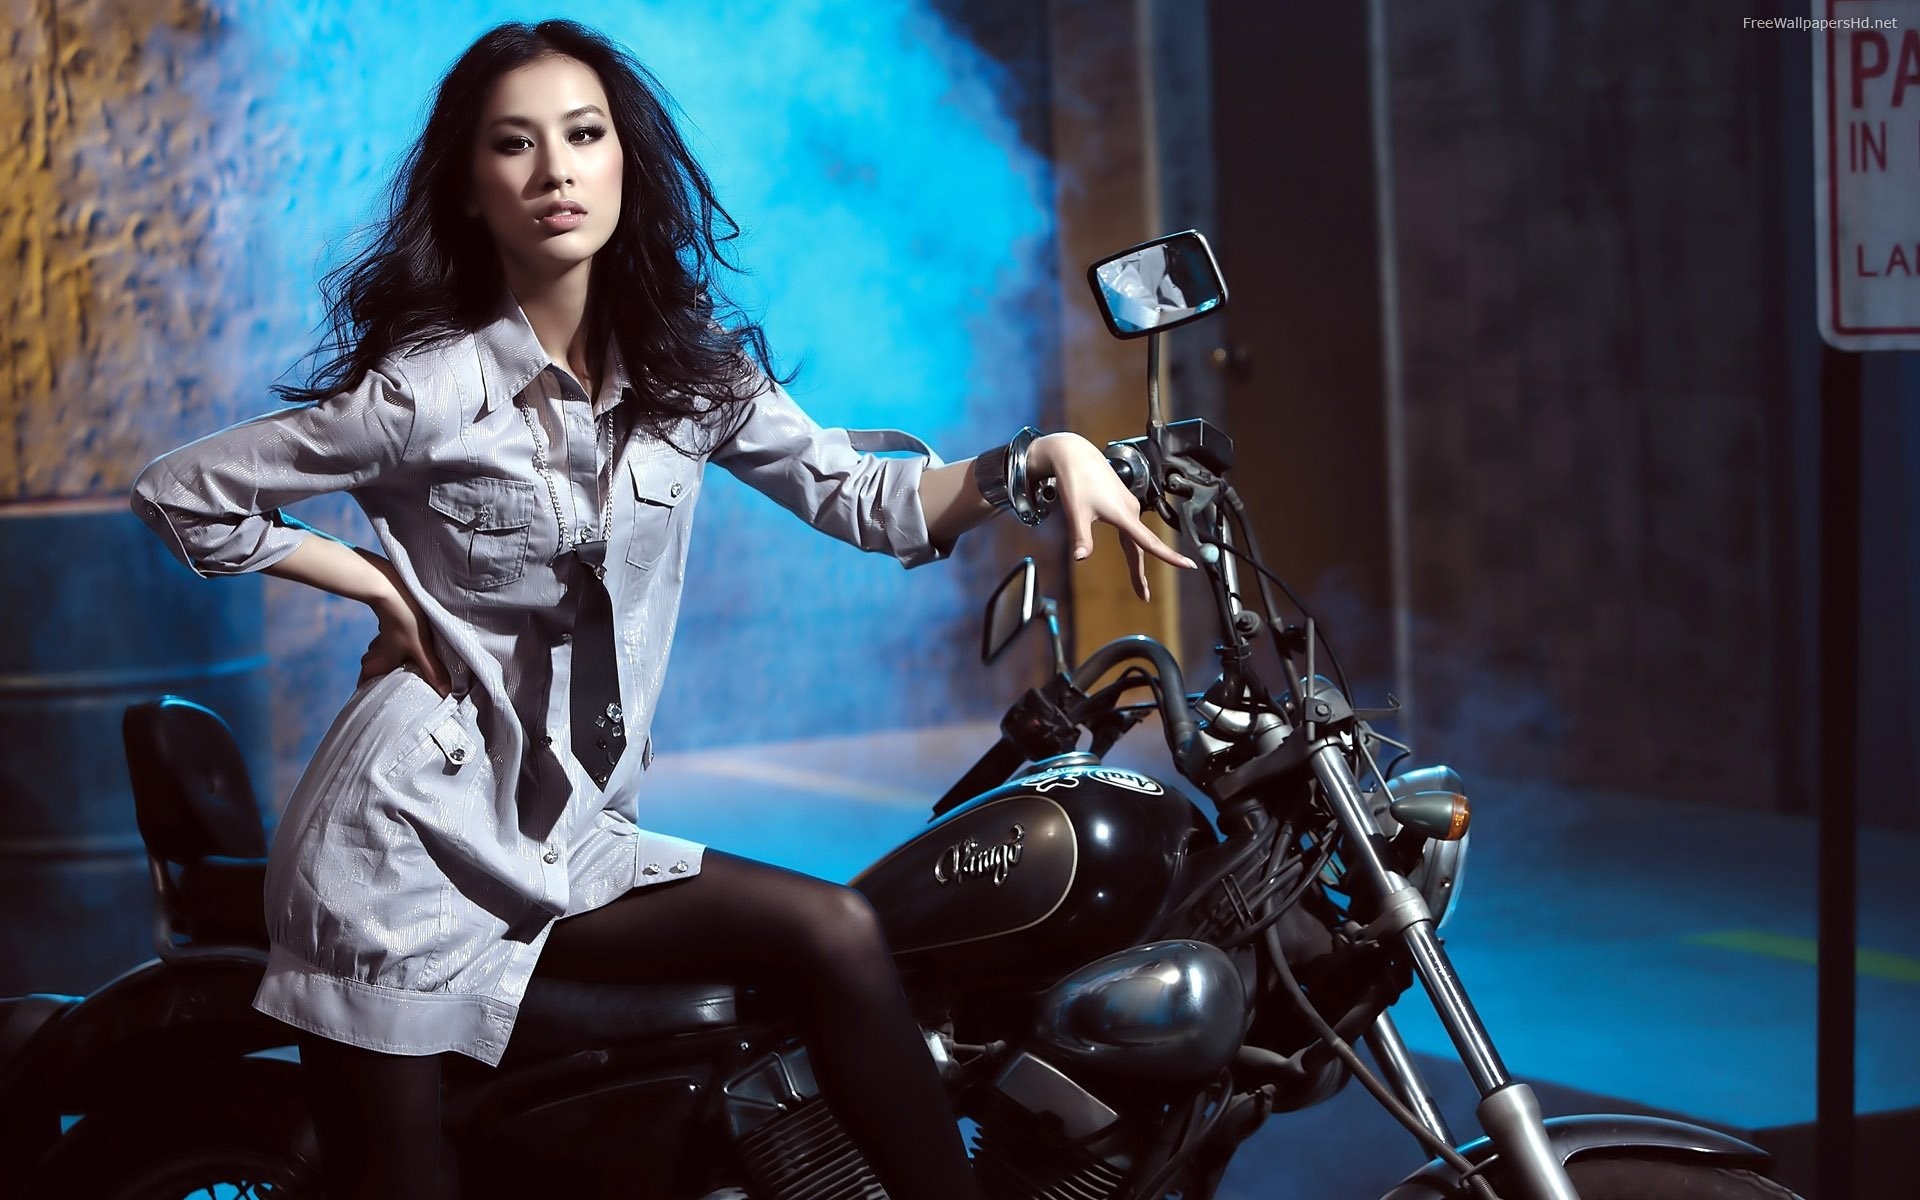 Motorcycle Girl 458682